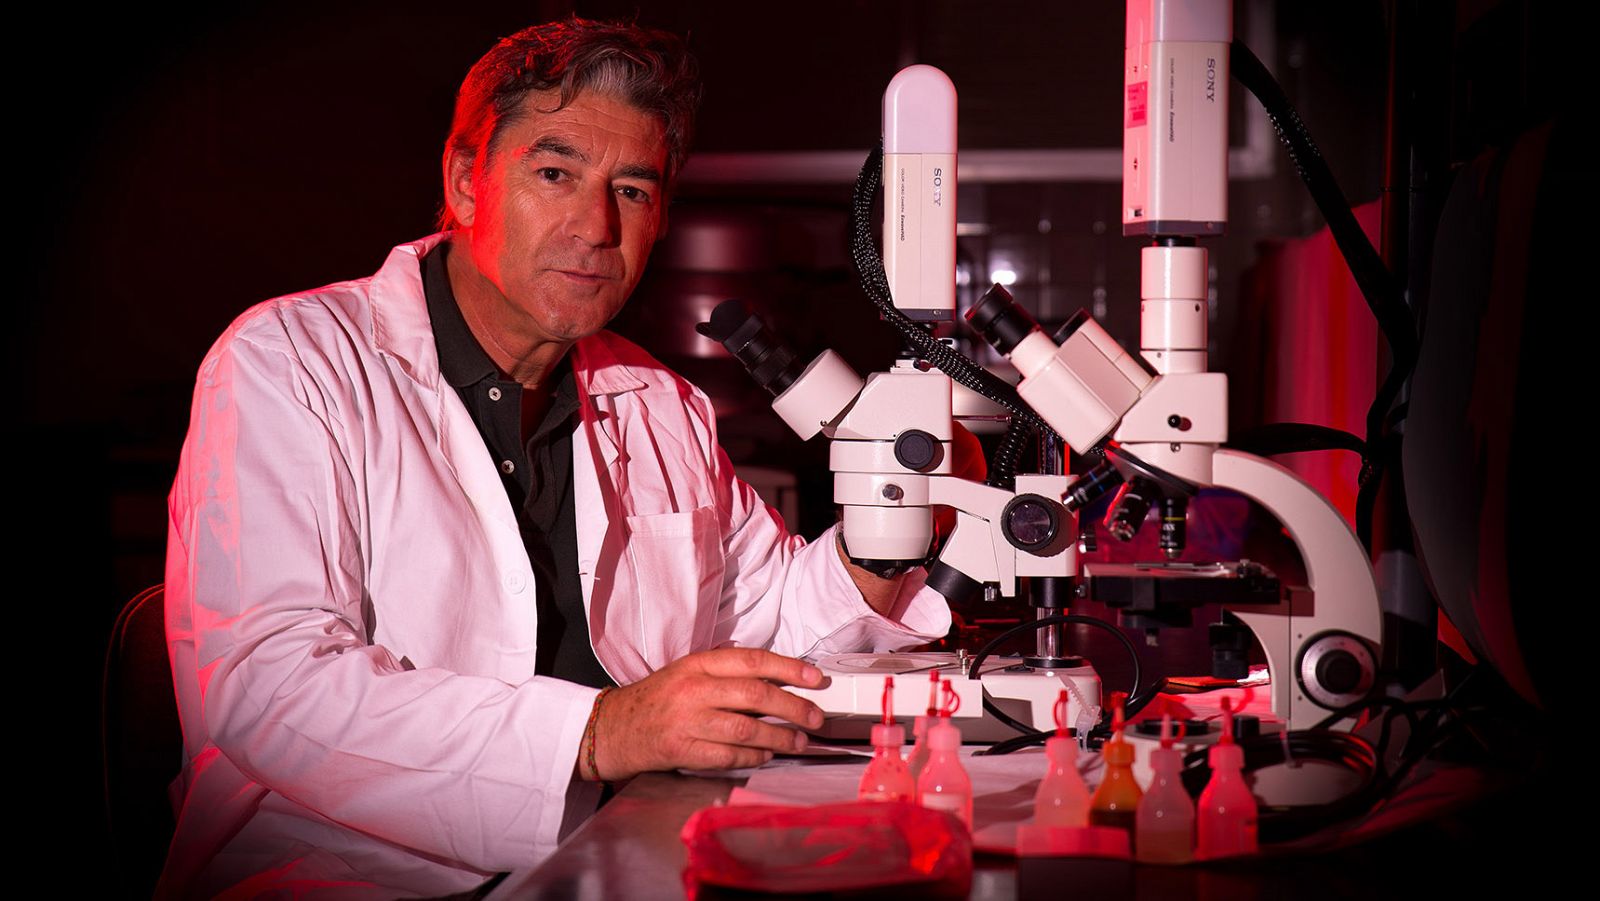 Luis Monje, biólogo y profesor de fotografía científica.